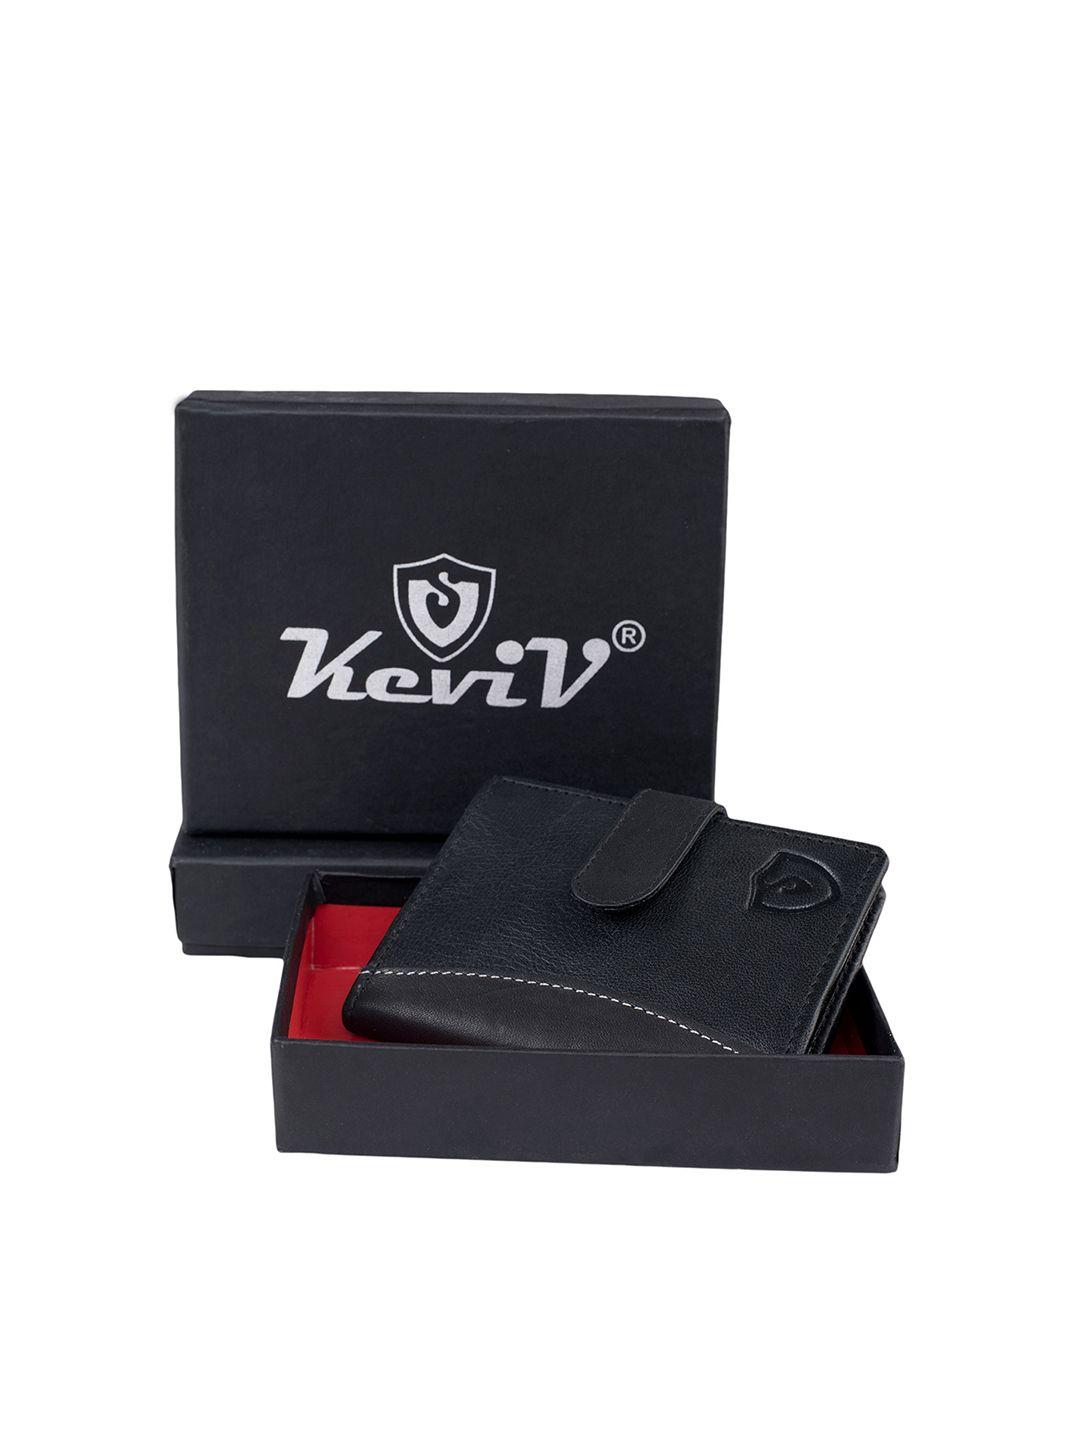 keviv men black leather card holder